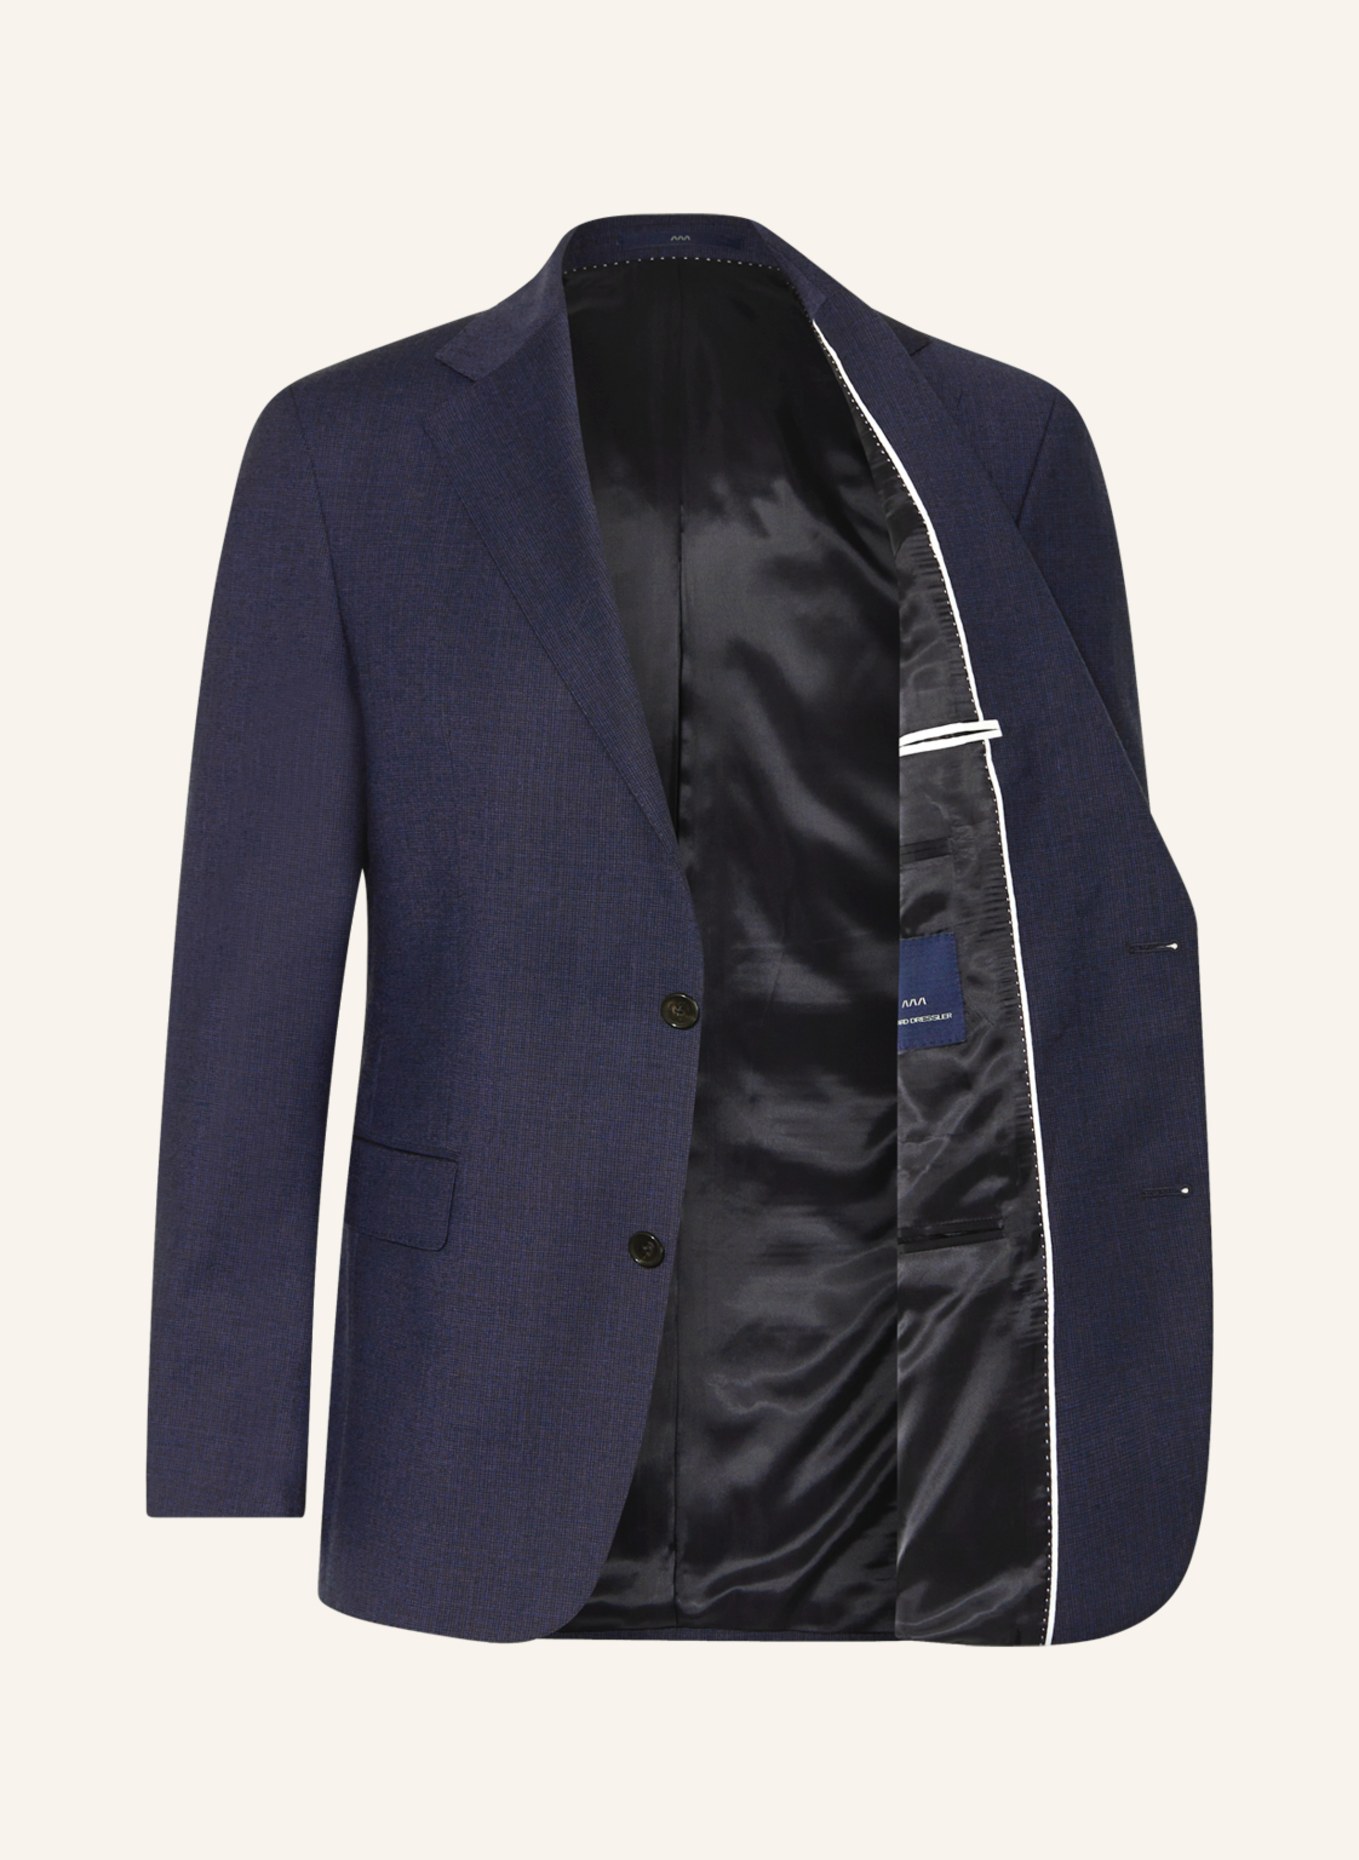 EDUARD DRESSLER Suit jacket comfort fit, Color: 047 DUNKELBLAU (Image 4)